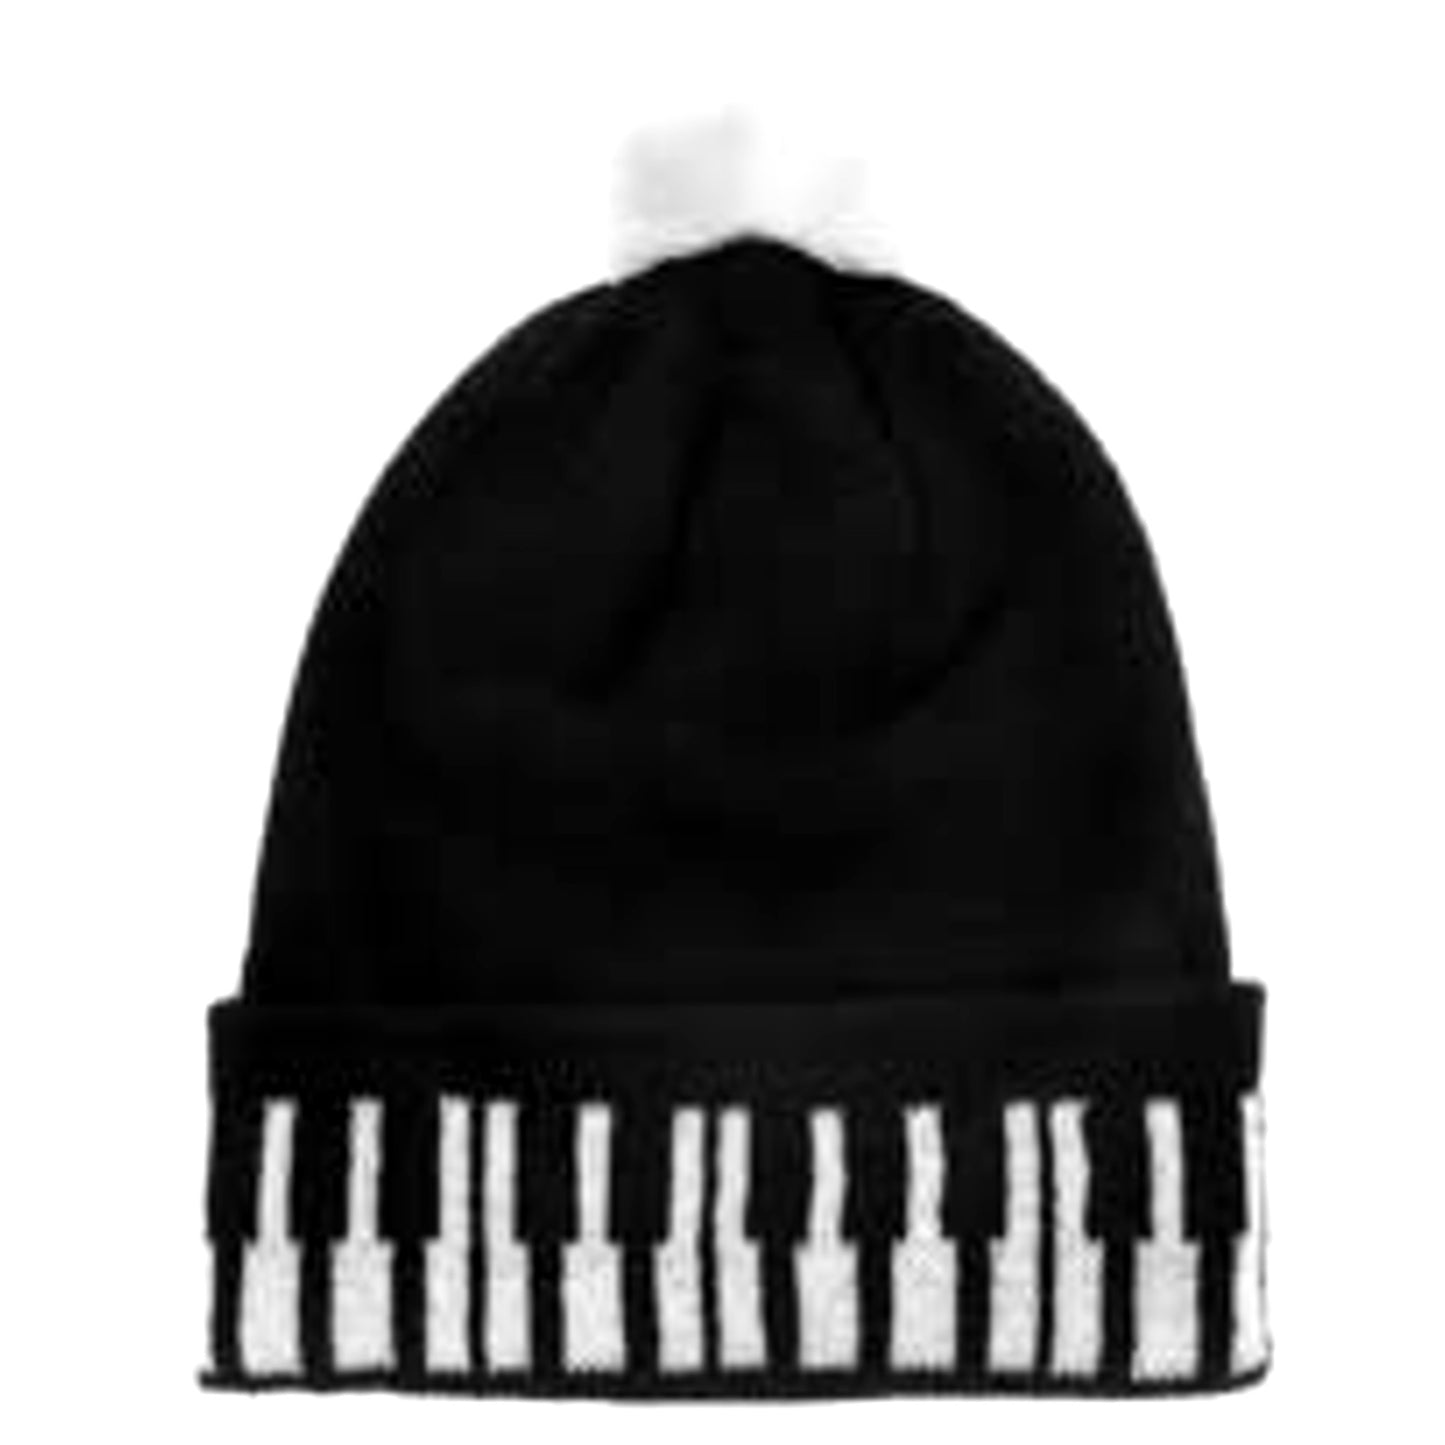 Piano Keys Winter Hat